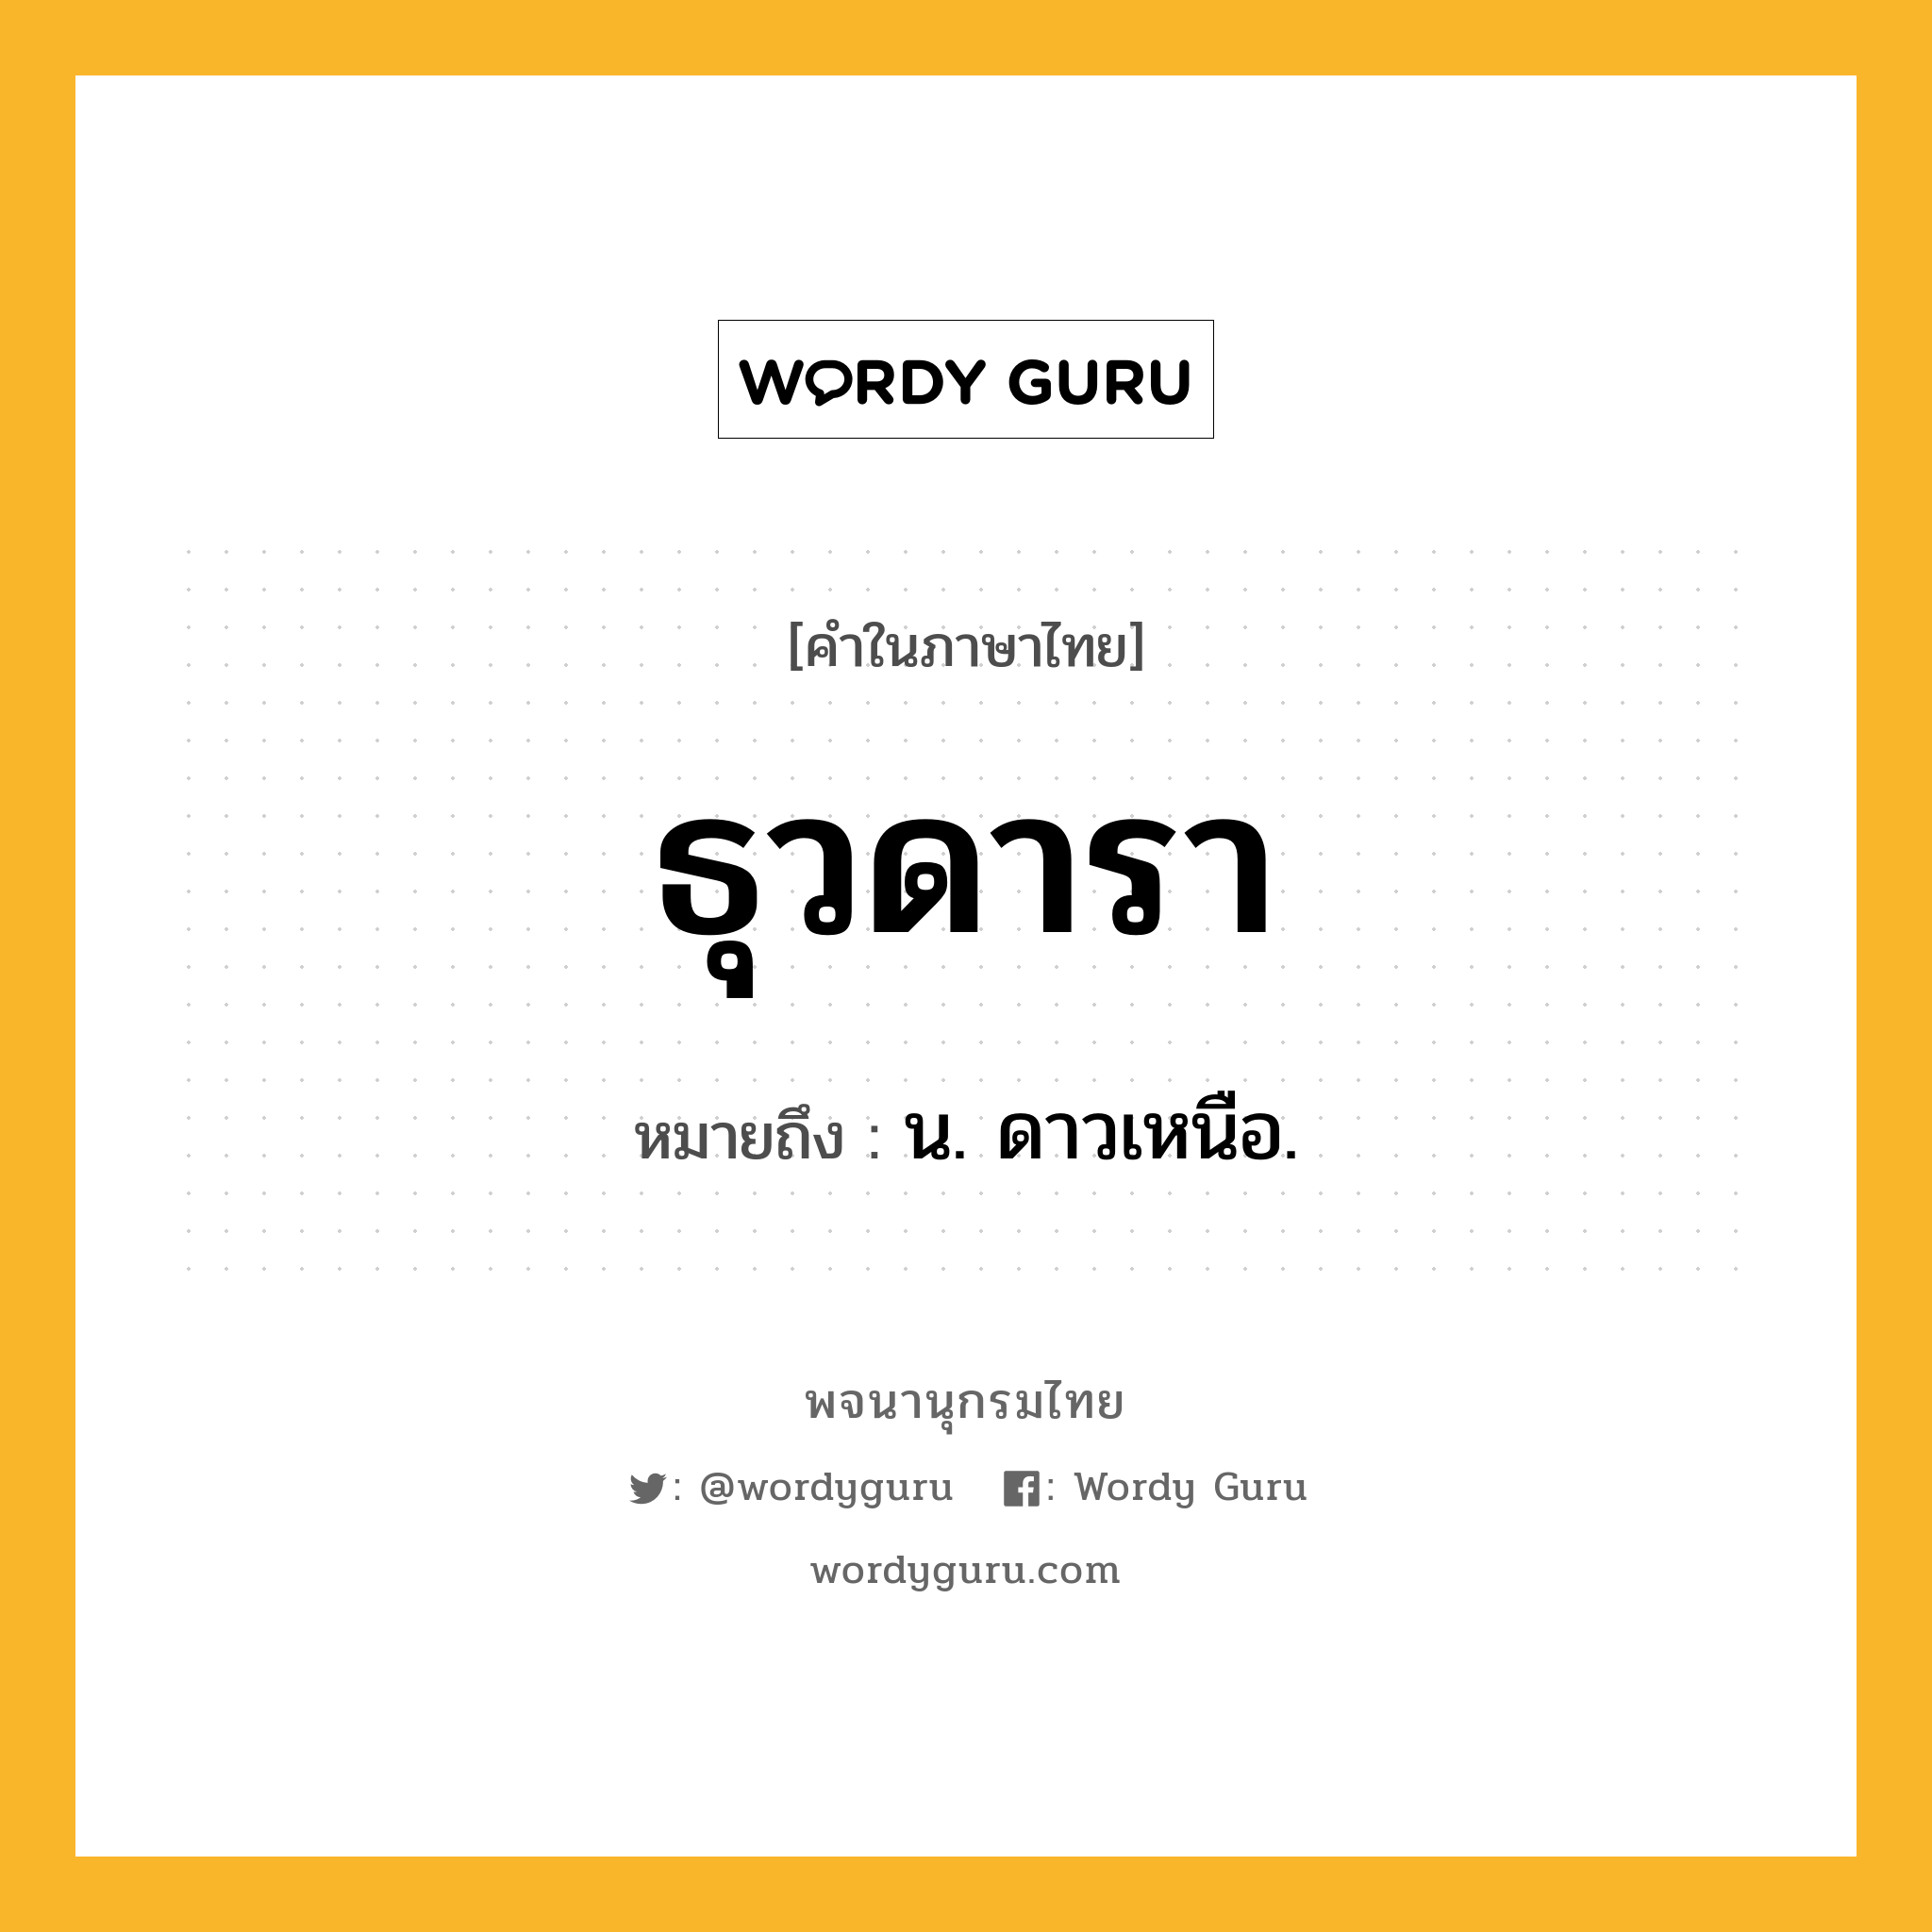 ธุวดารา หมายถึงอะไร?, คำในภาษาไทย ธุวดารา หมายถึง น. ดาวเหนือ.